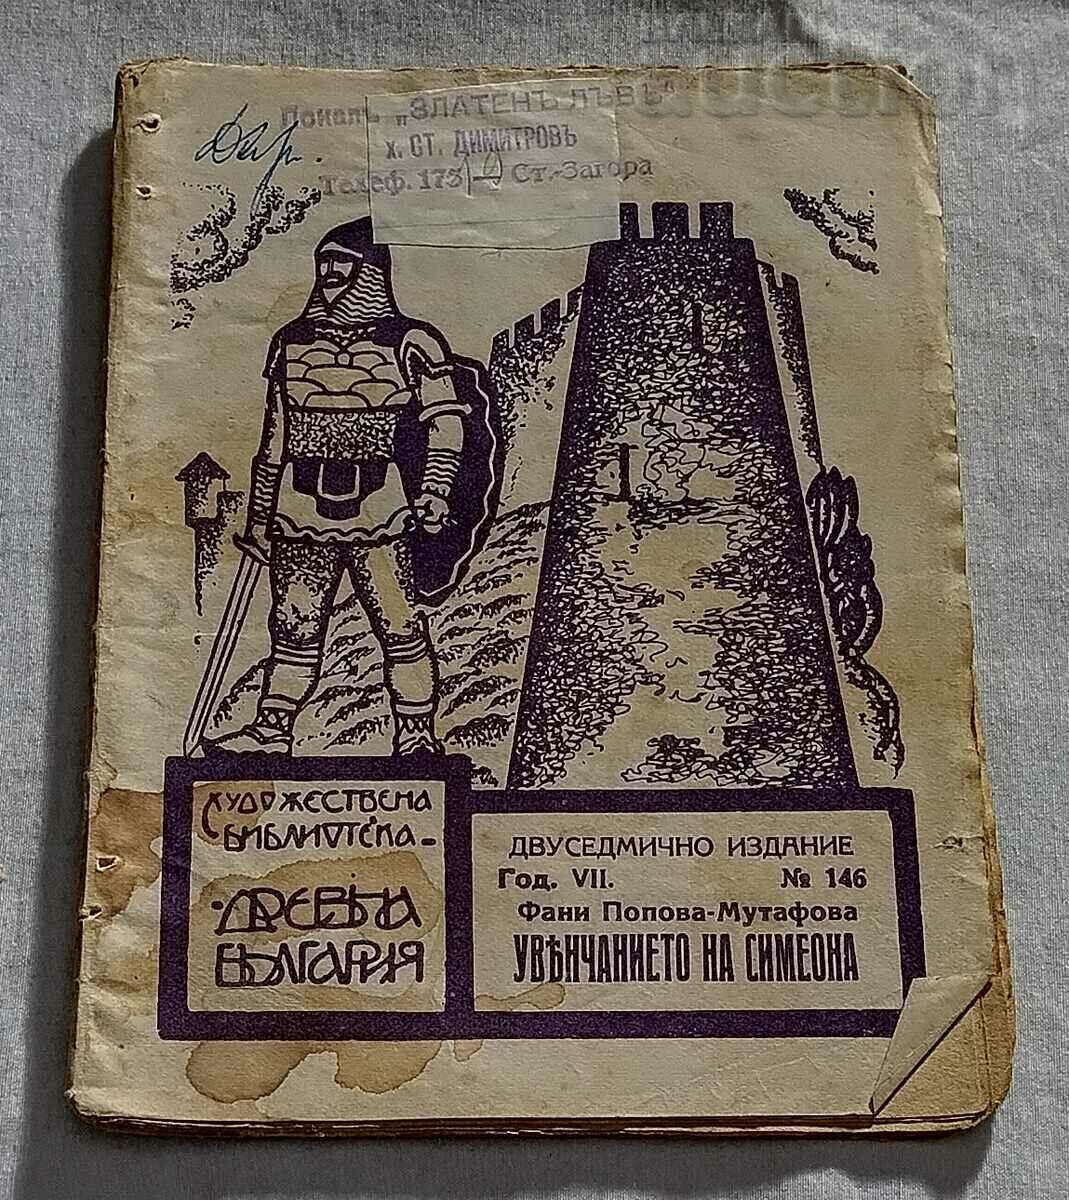 Η ΣΤΕΨΗ ΤΟΥ SIMEON F. POPOVA "ΑΡΧΑΙΑ ΒΟΥΛΓΑΡΙΑ" 1933